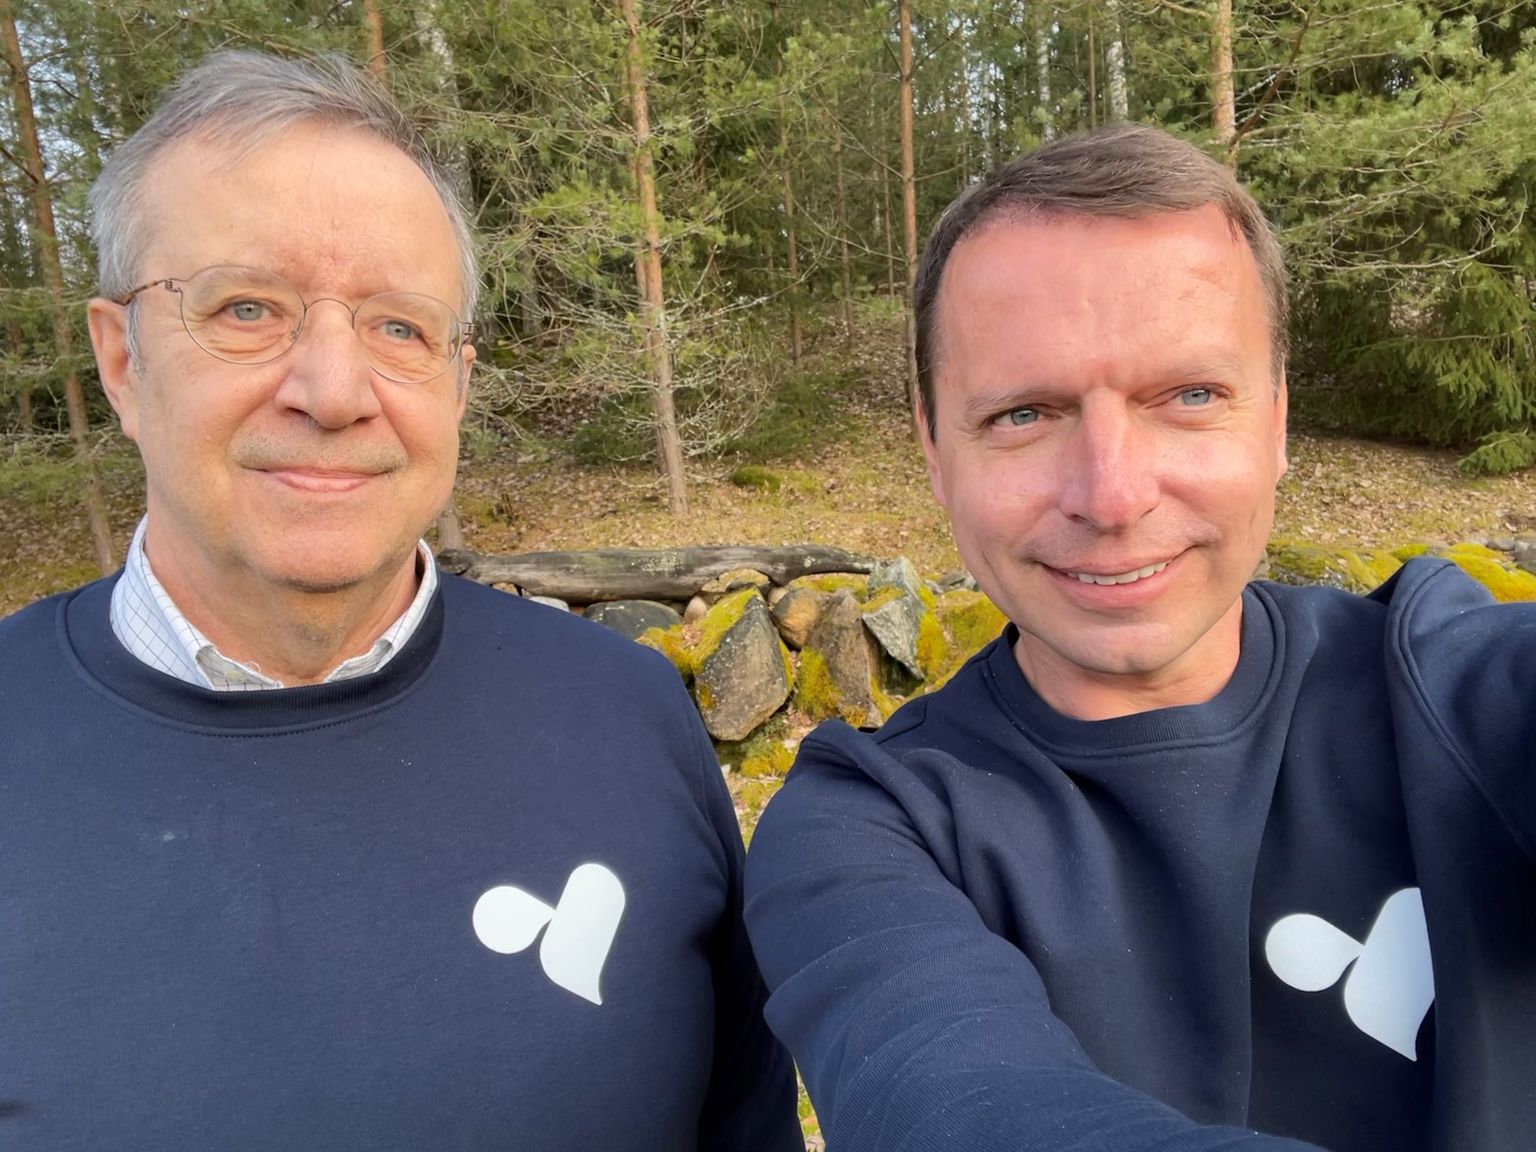 Telemeditsiini platvormi Viveo Health nõunik Toomas Hendrik Ilves ning ettevõtte asutaja Raul Källo.